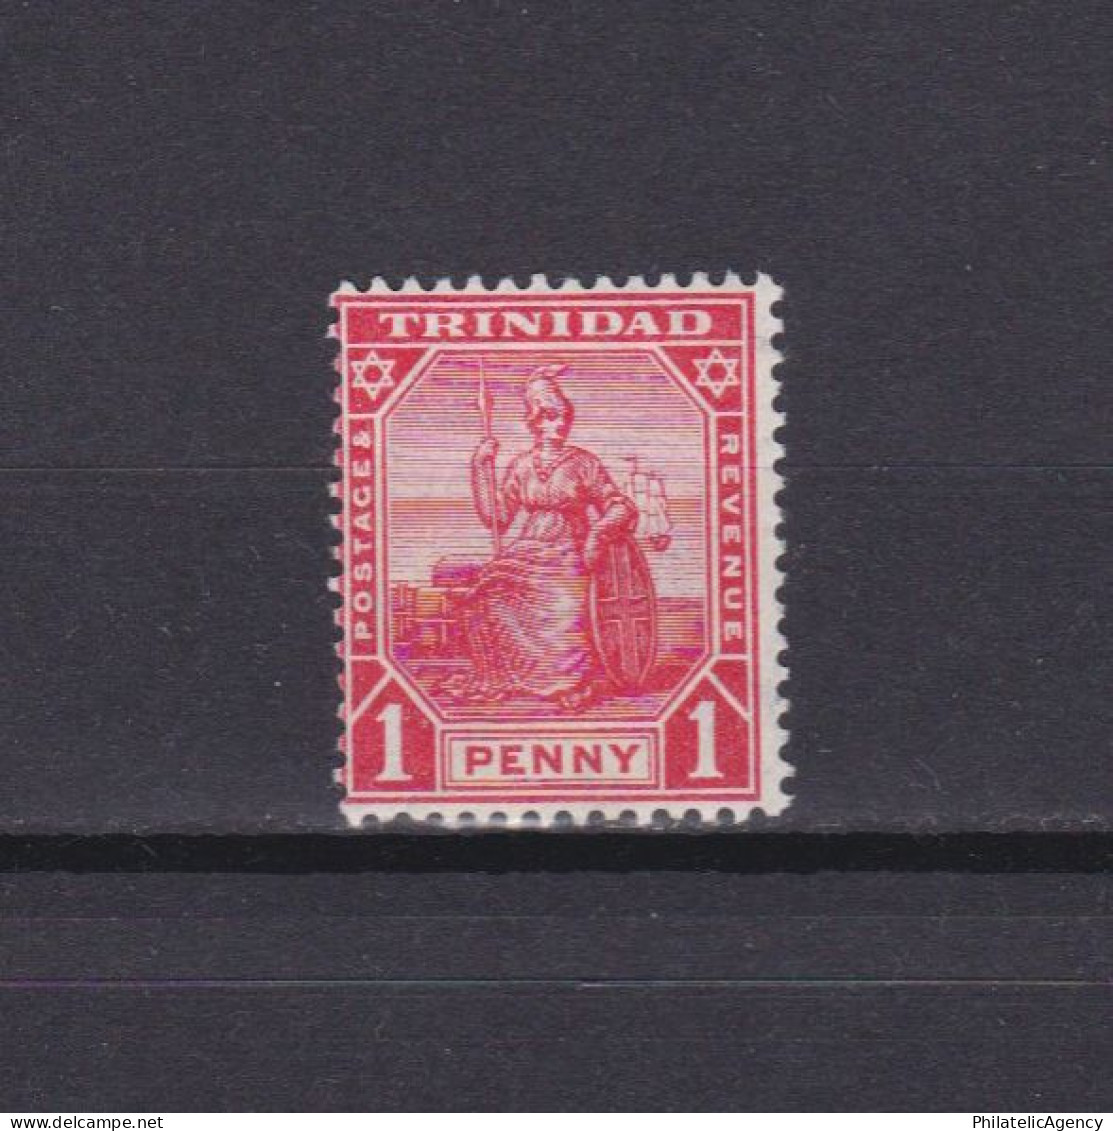 TRINIDAD 1909, SG #147, CV £15, MH - Trinité & Tobago (...-1961)